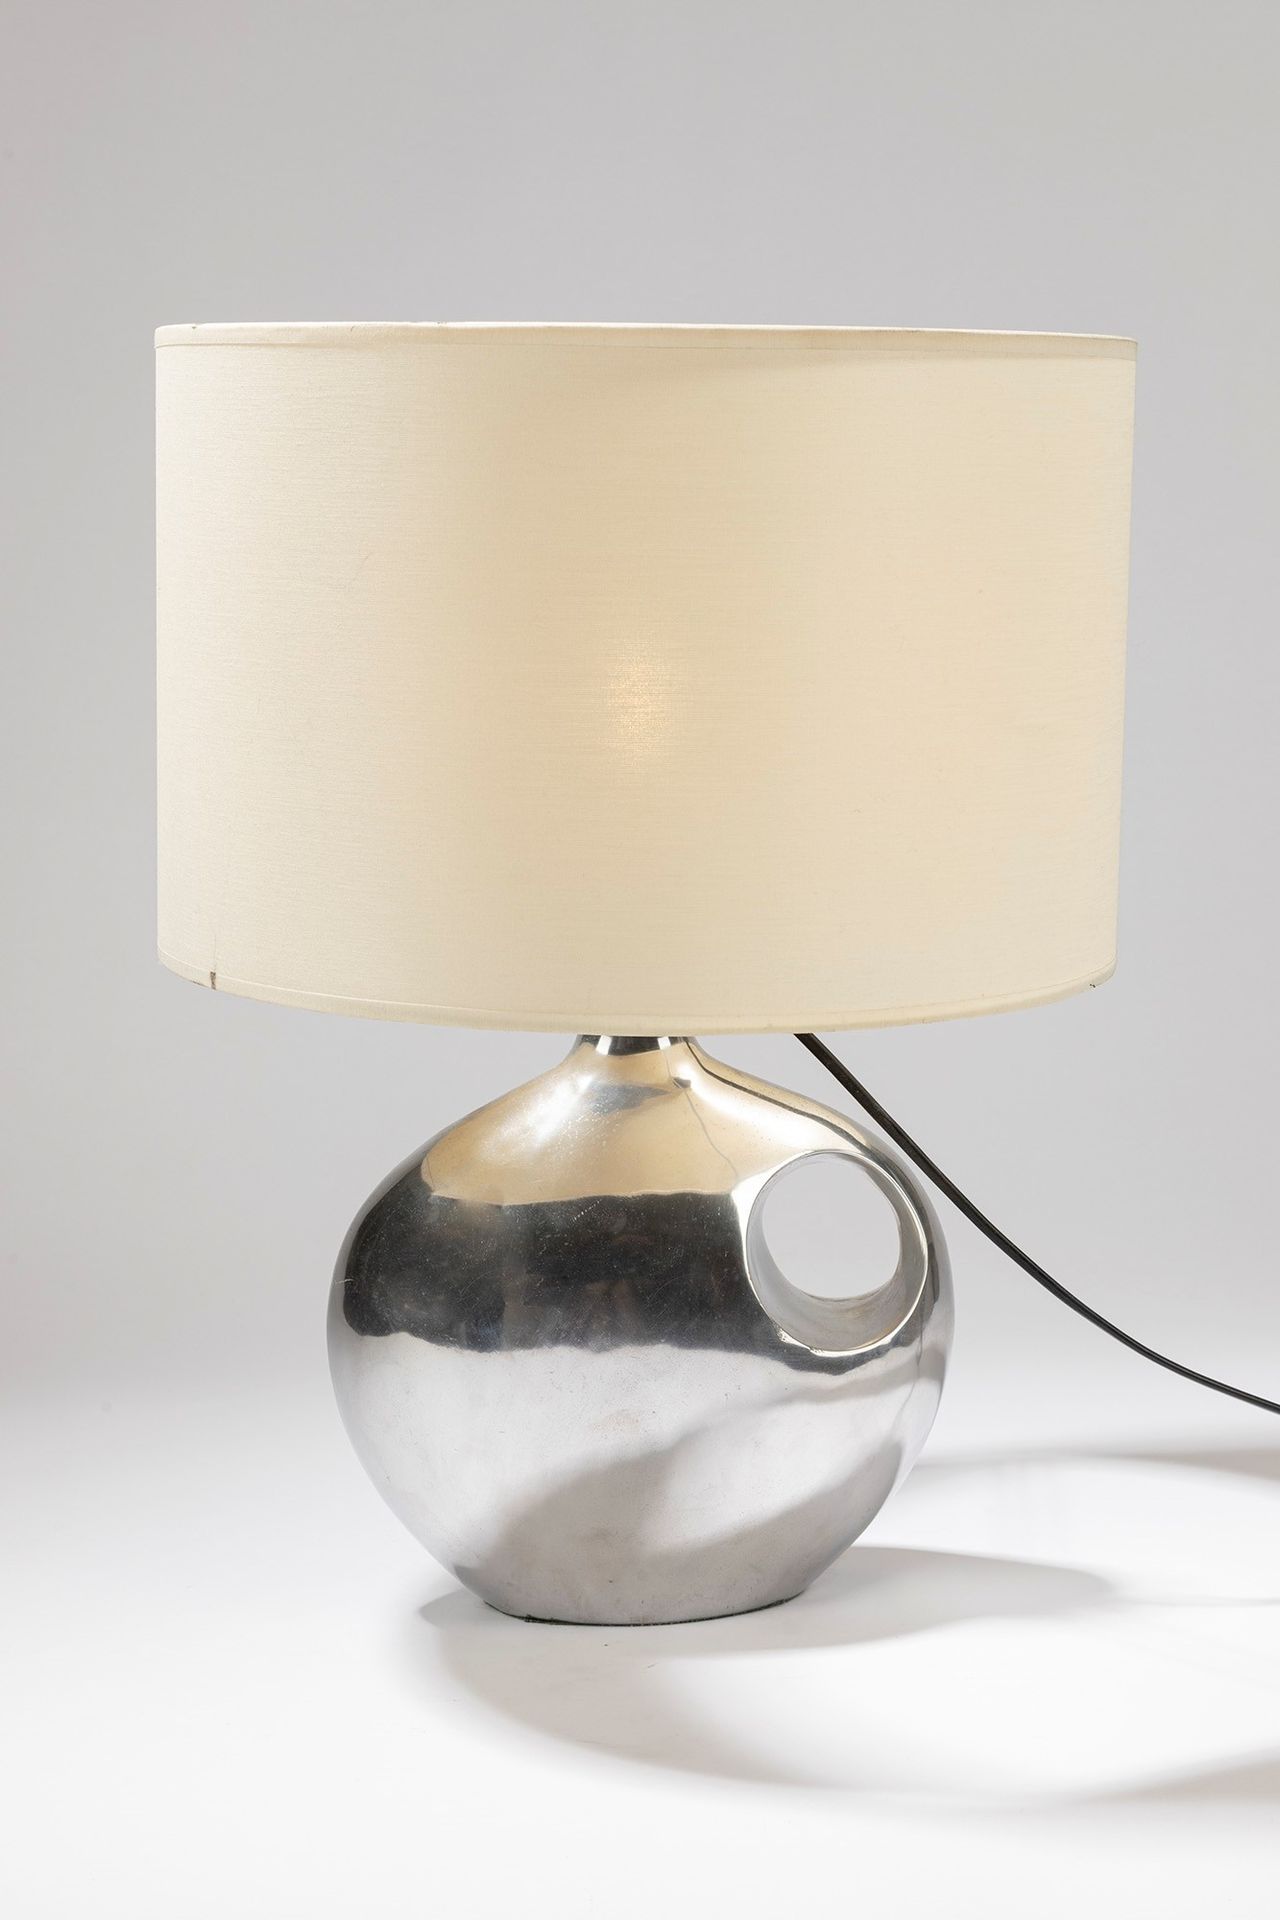 ITALIAN MANUFACTURE Lampe de table, 1970 ca.

Dm cm 35, H cm 49
métal chromé.